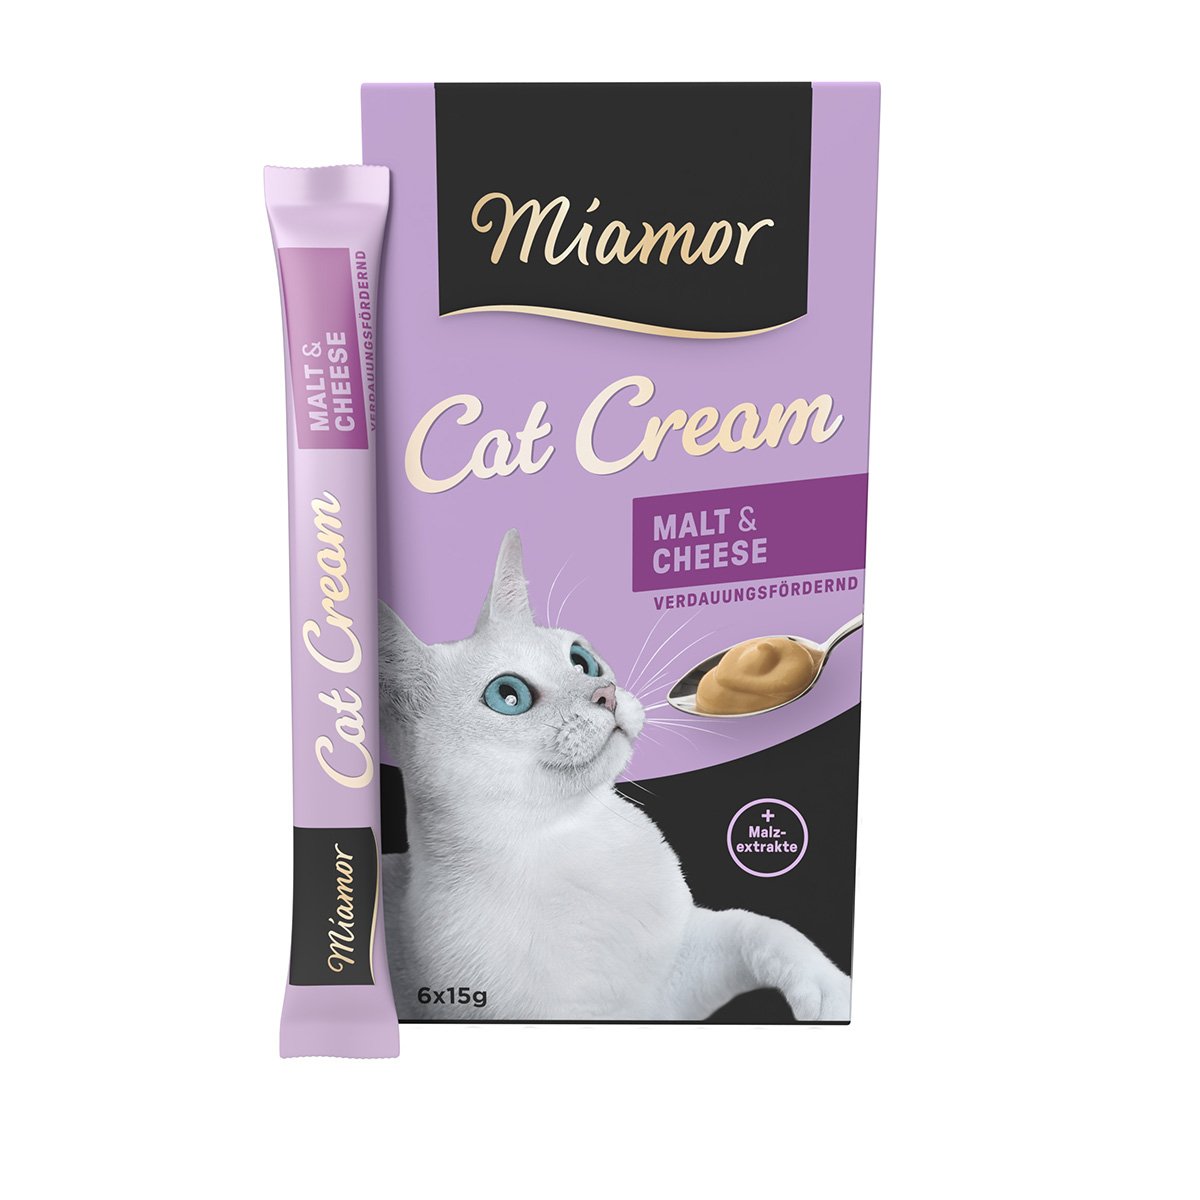 Miamor Cat Cream Malt & Cheese 24x15g von Miamor